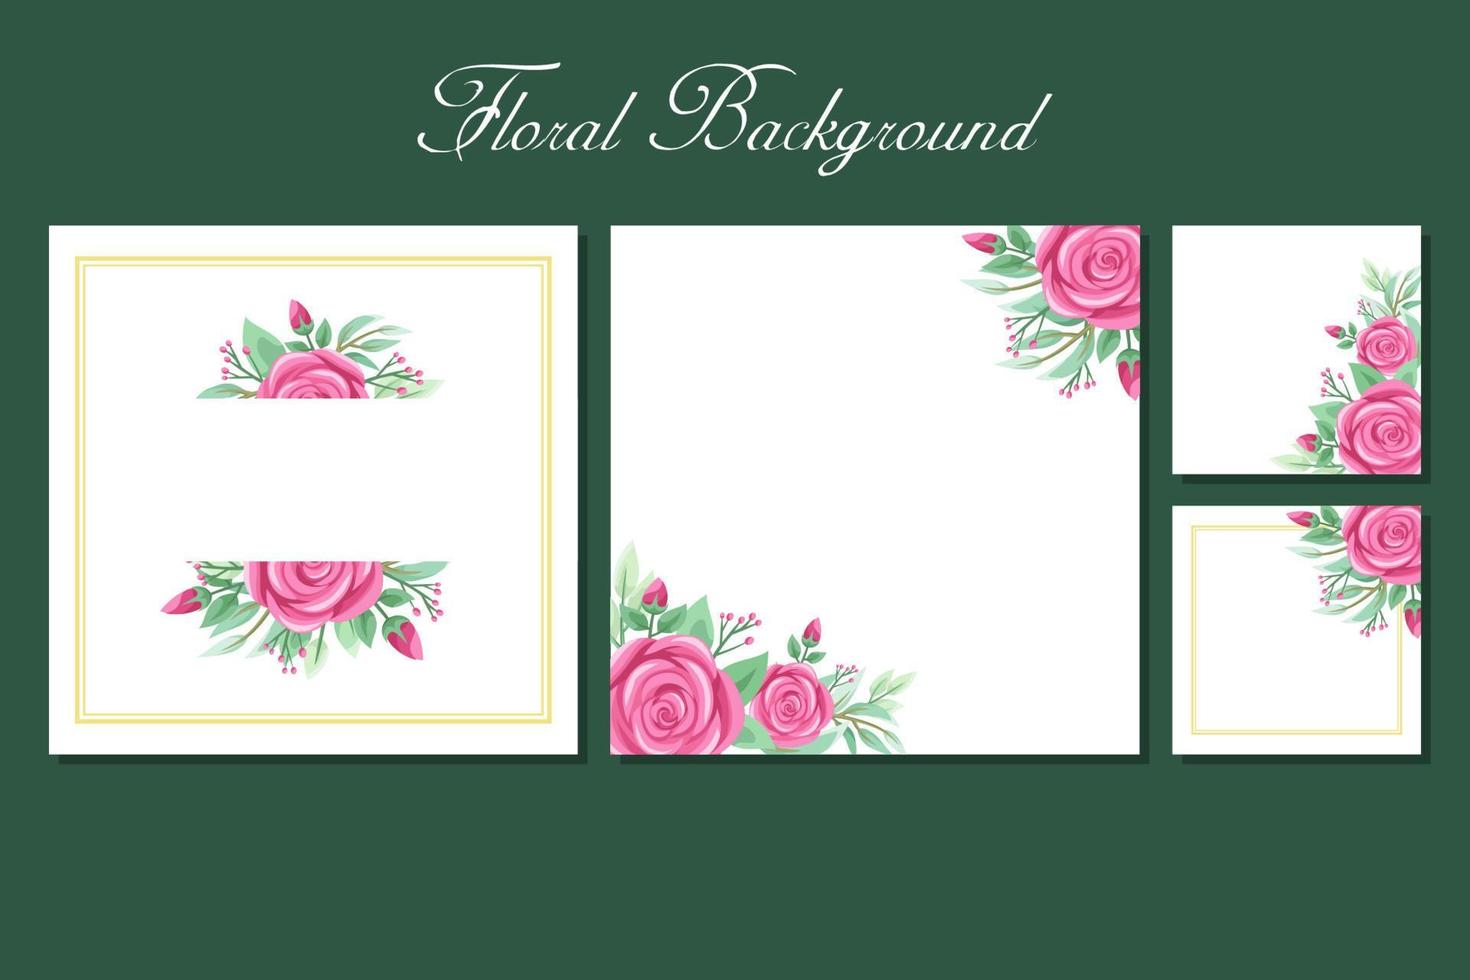 Quadratischer Hintergrund mit Rosen- und Grünrahmen für Social-Media-Beitragsvorlagen, Grußkarten, Hochzeits- oder Verlobungseinladungen und Posterdesign vektor